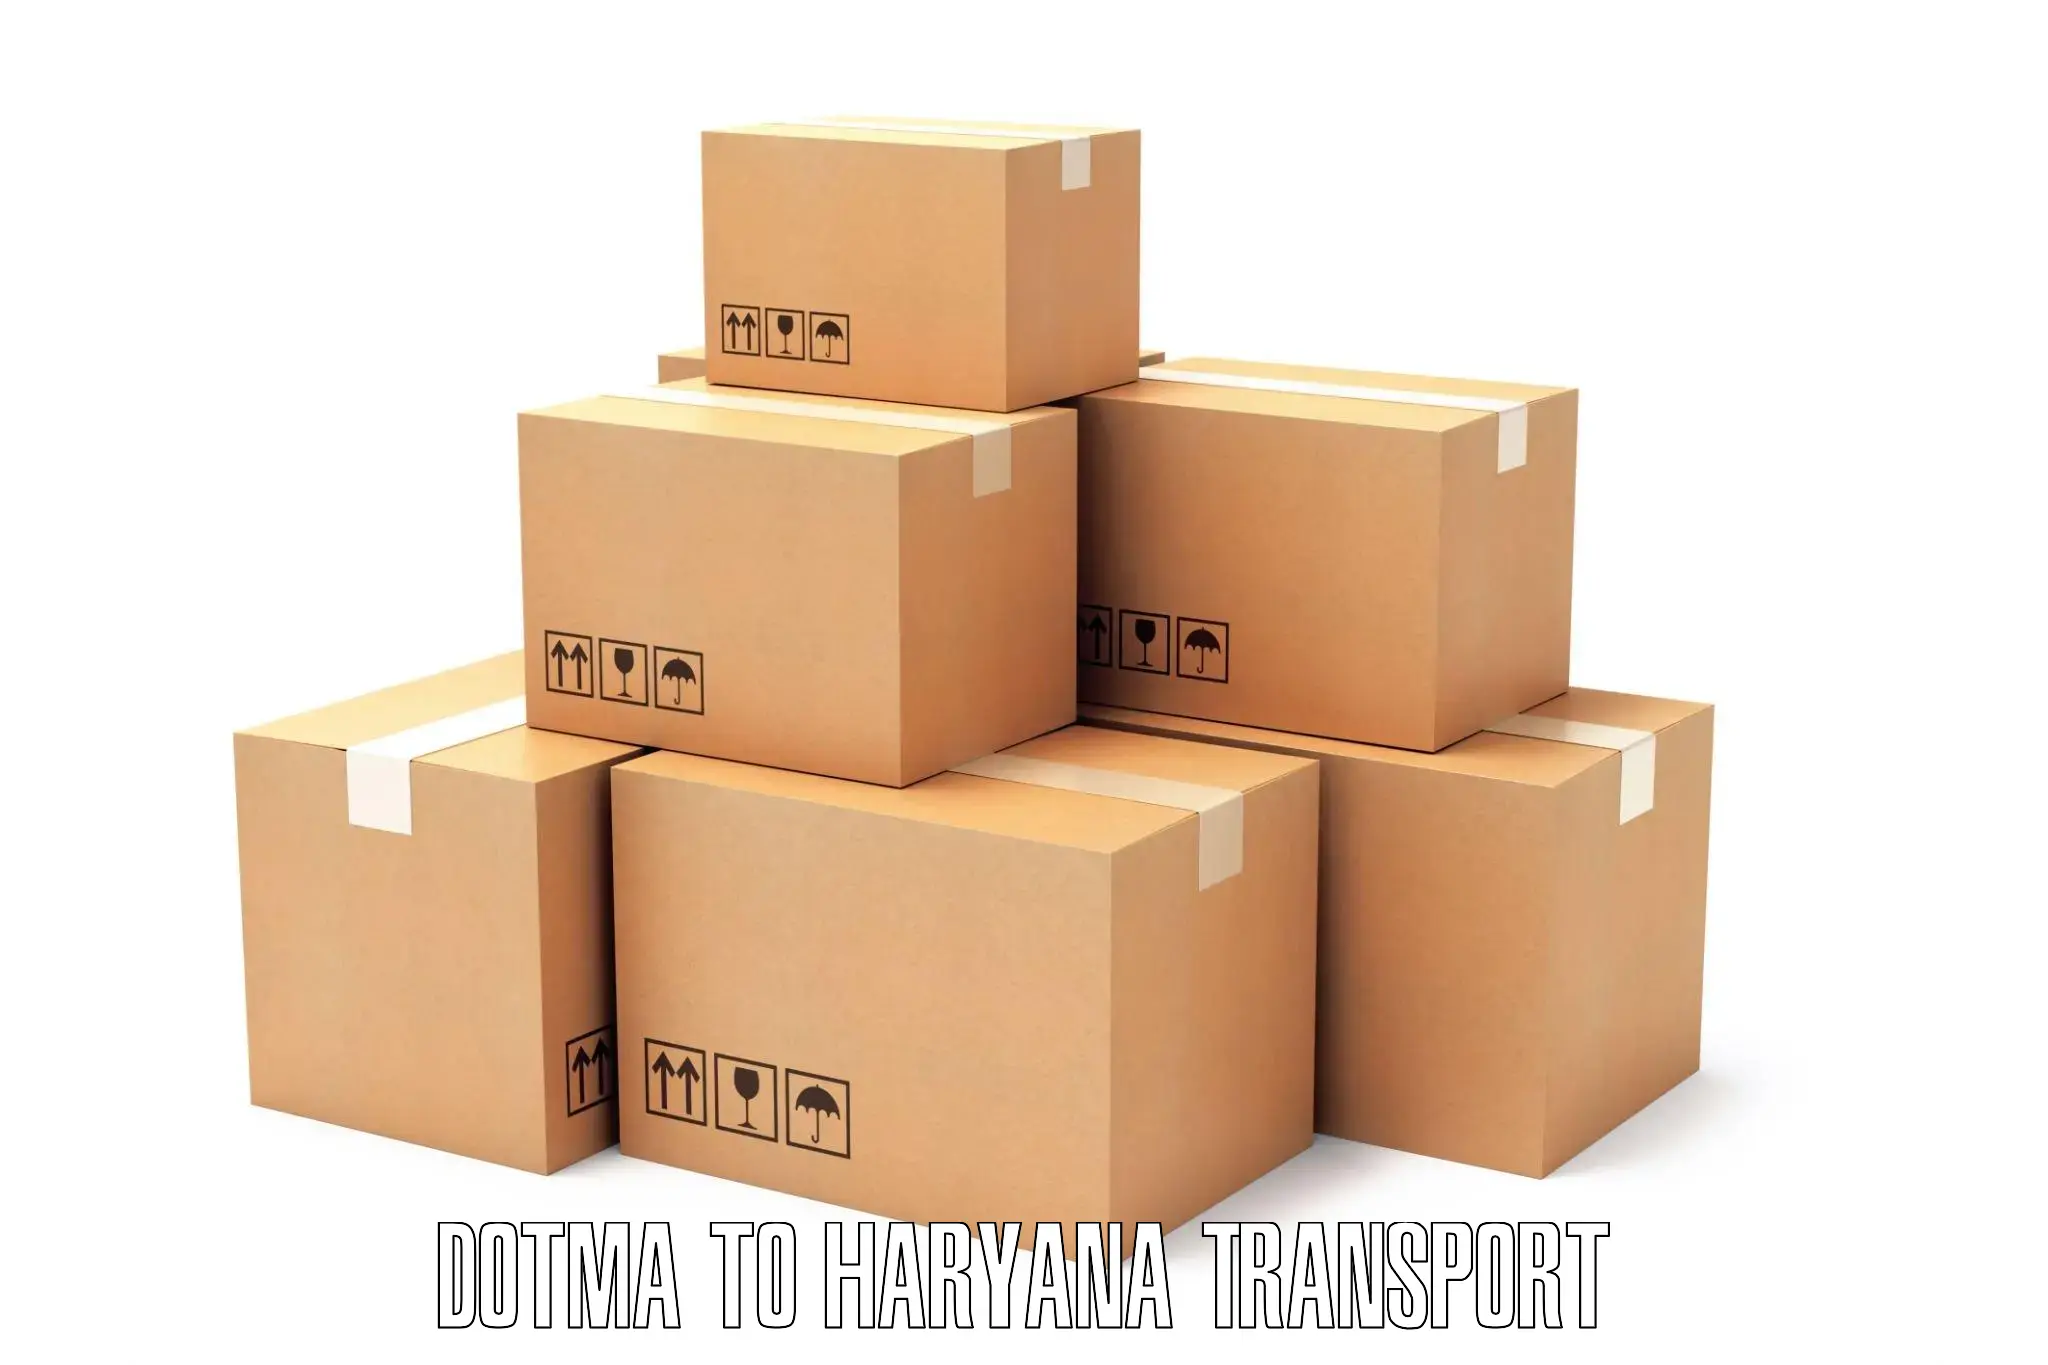 Daily parcel service transport Dotma to Rohtak